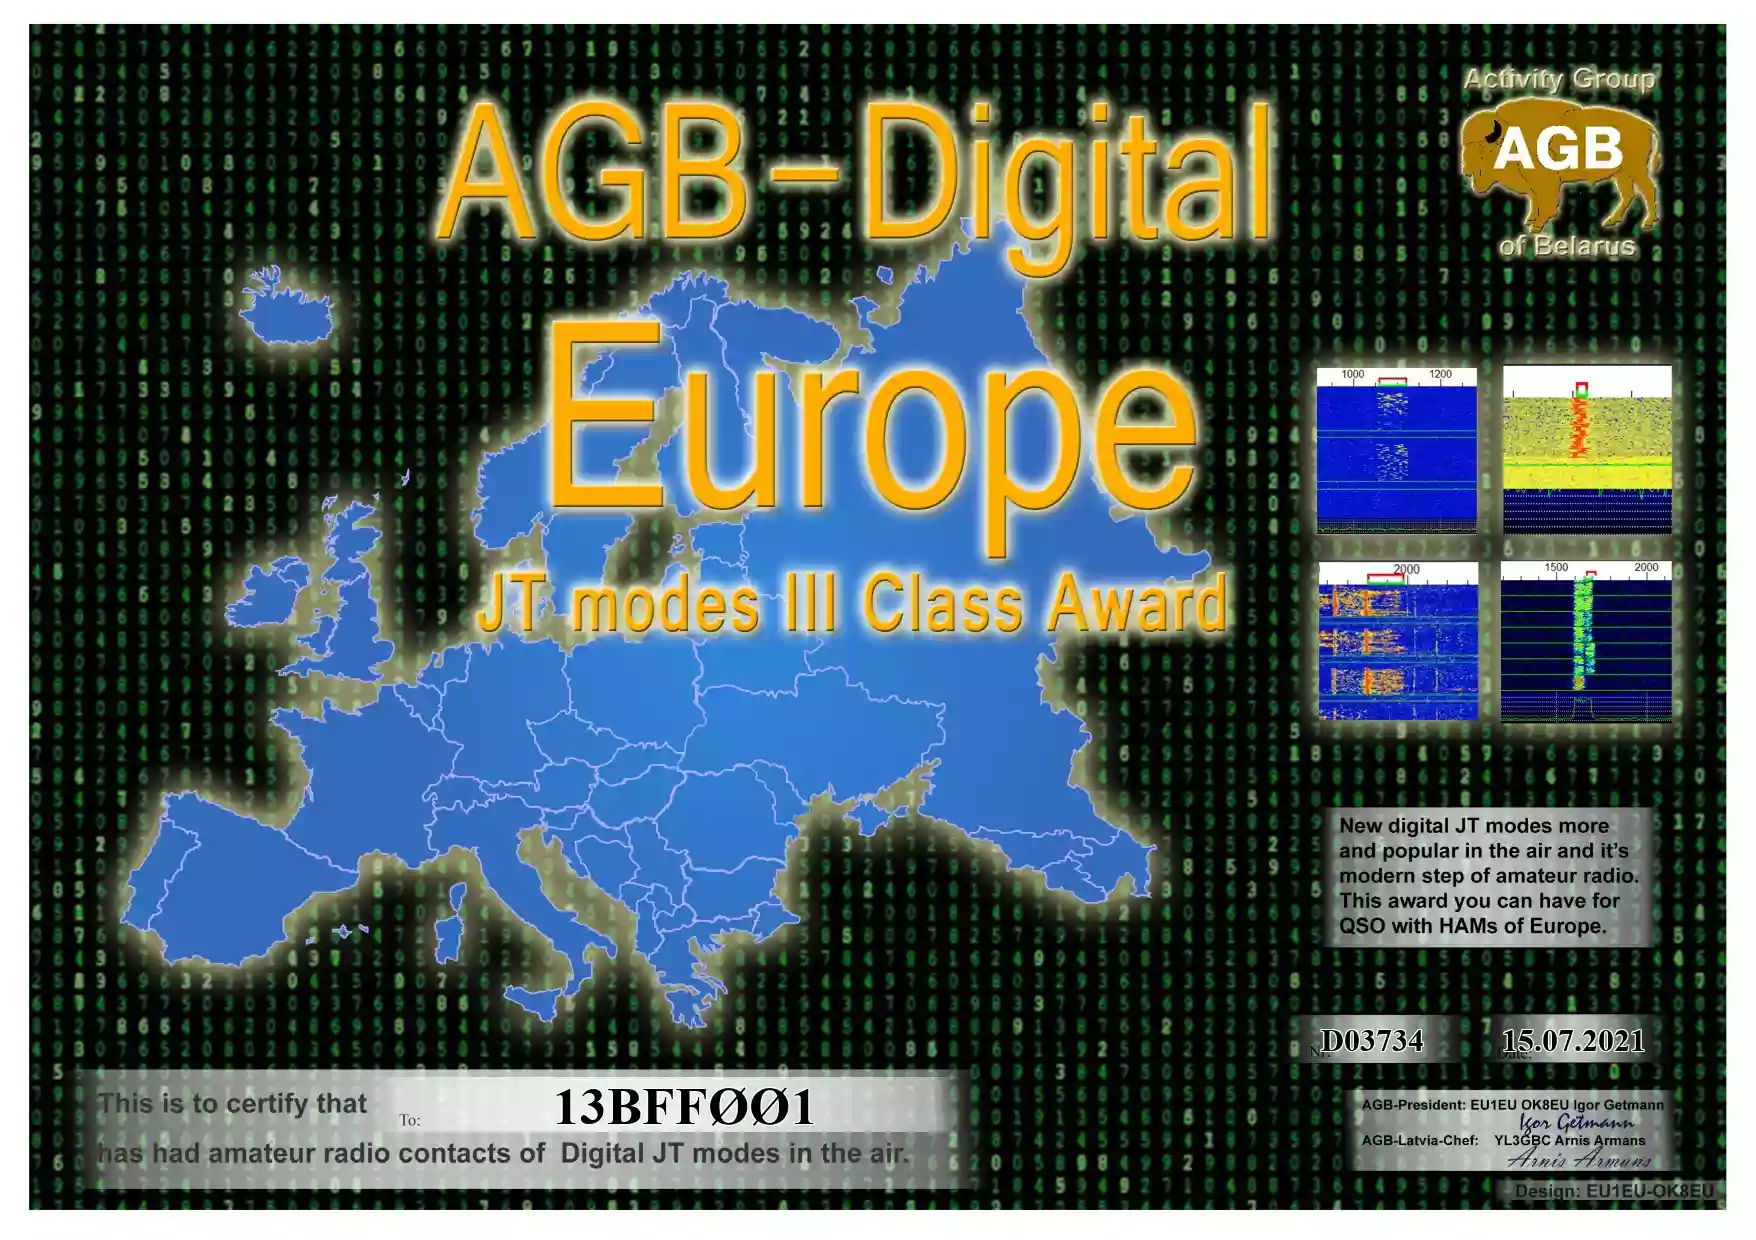 13BFF001 AGB Award